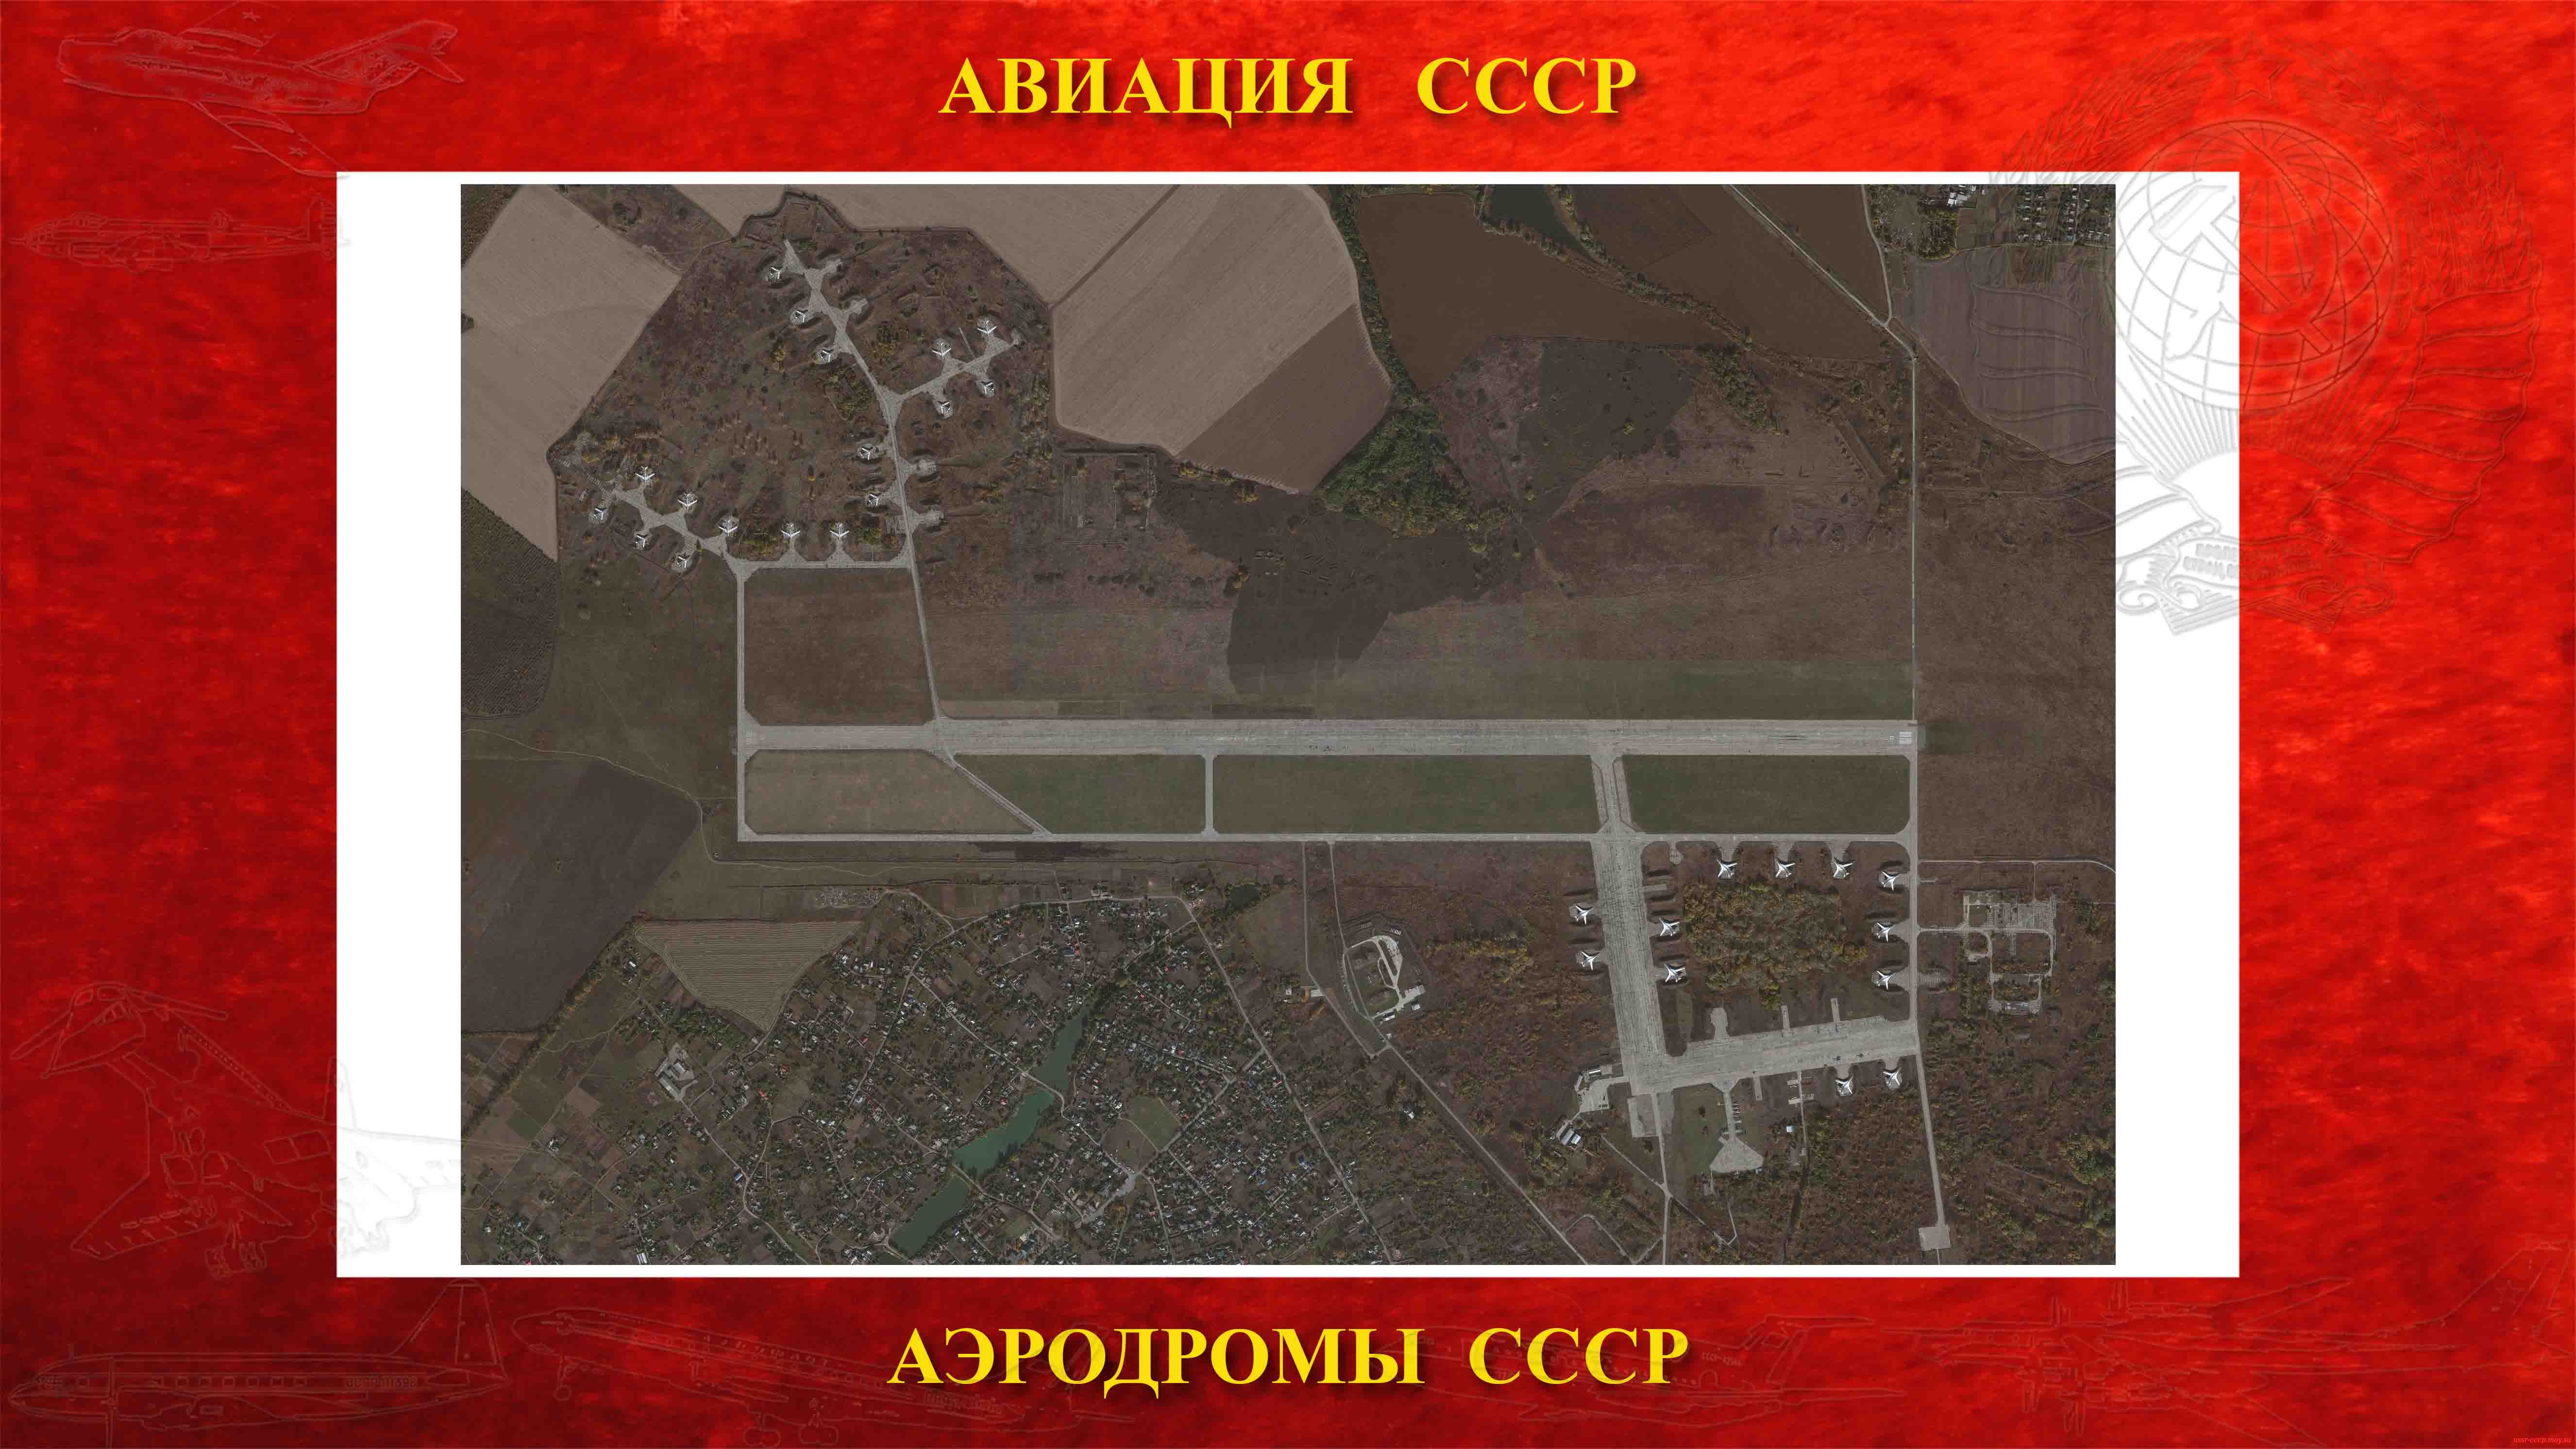 Полтава-4 — Аэродром тяжелой стратегической авиации СССР (1936) (повествование)